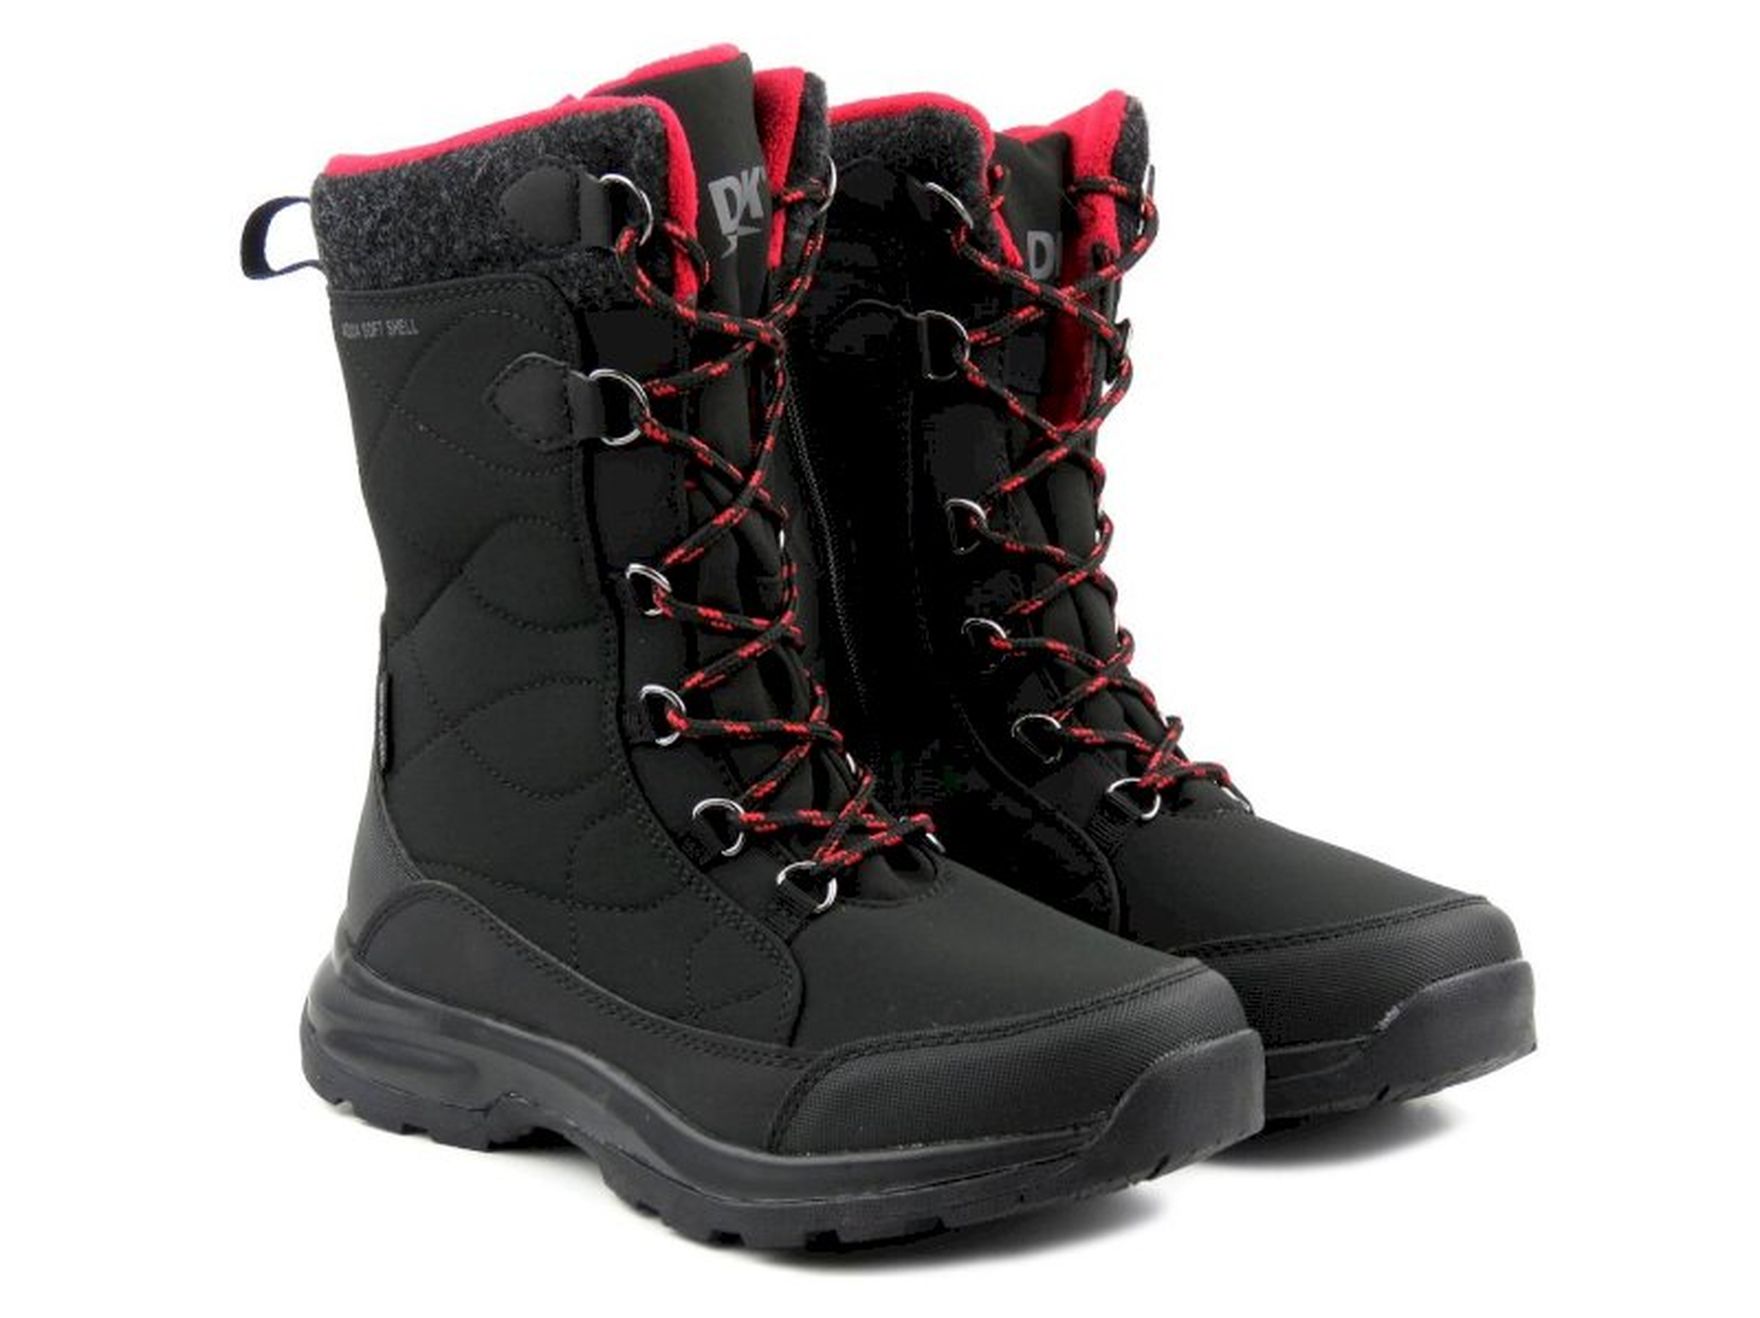 Wysokie buty zimowe, śniegowce damskie DK TECH SoftShell 2105, czarno-czerwone za 179 PLN